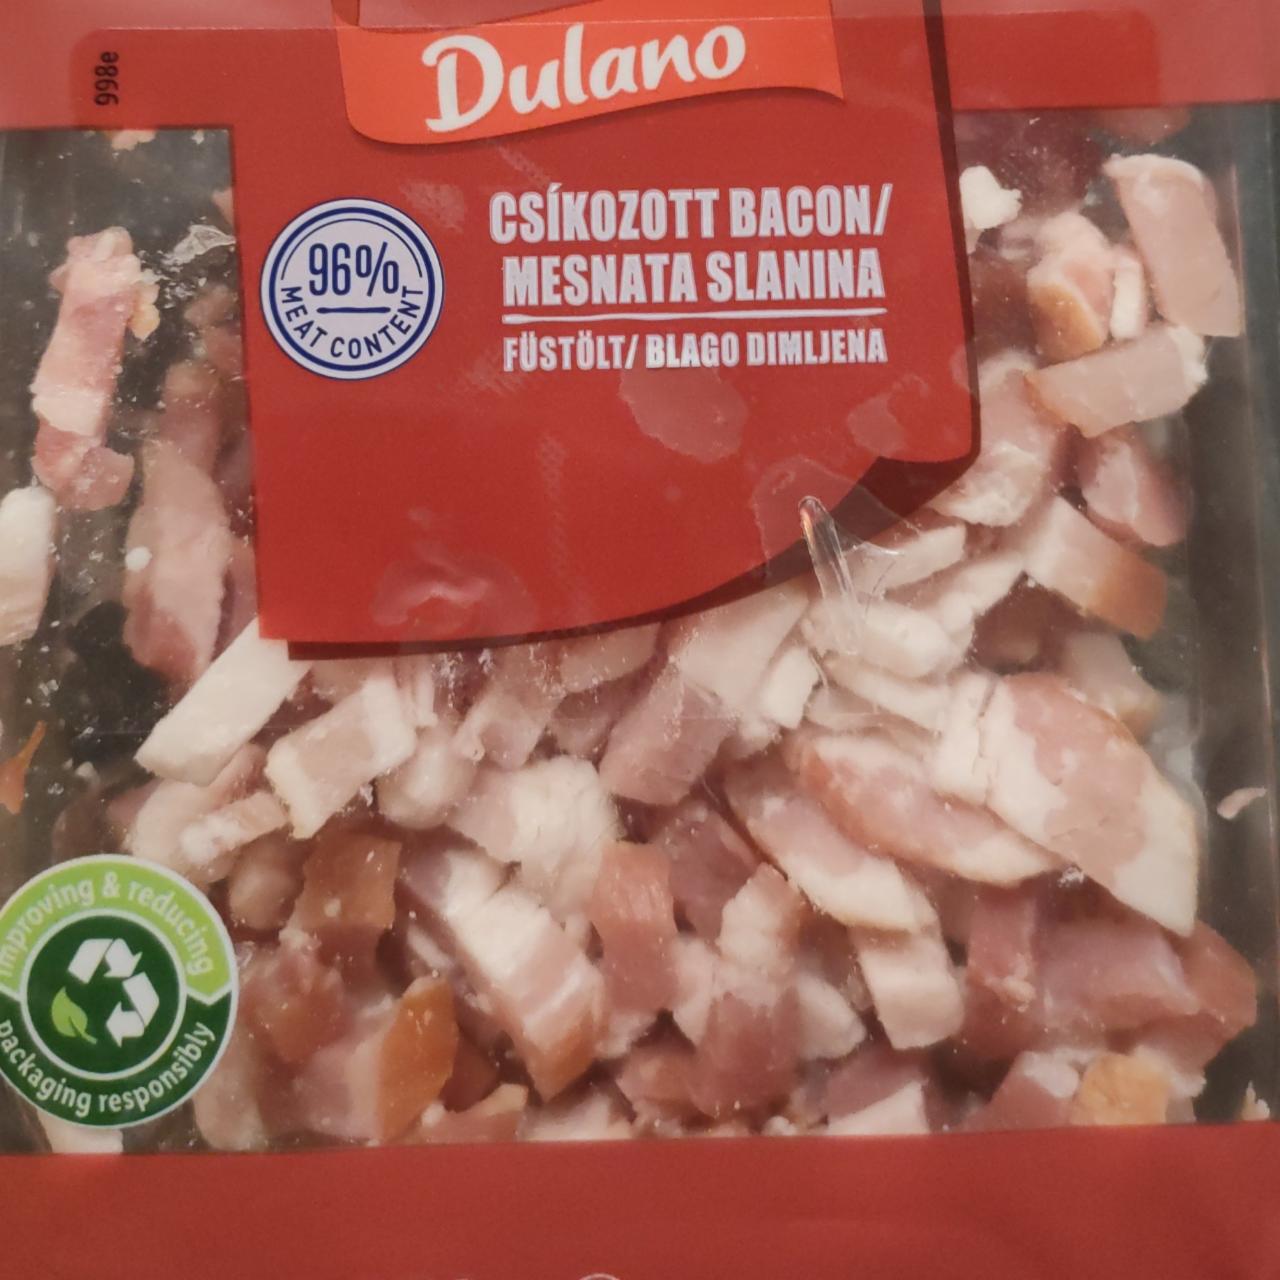 Képek - Csíkozott bacon füstült Dulano